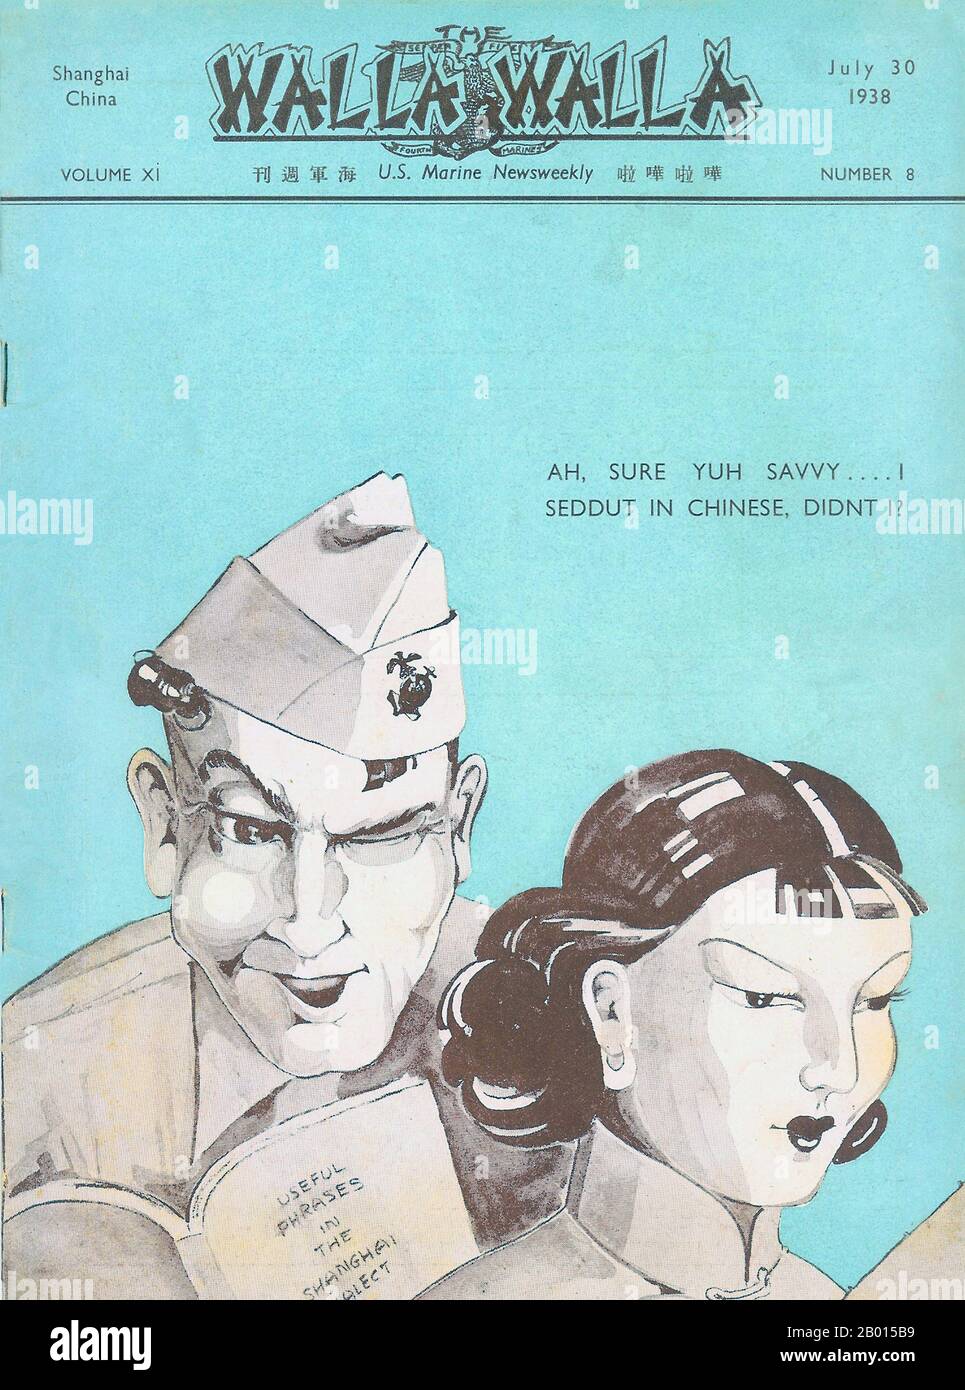 China: Portada de Walla Walla, US Marine News Weekly, julio de 30 1938. Caricatura satírica sobre el aprendizaje marino de Shanghai, o dialecto wu de chino. Foto de stock